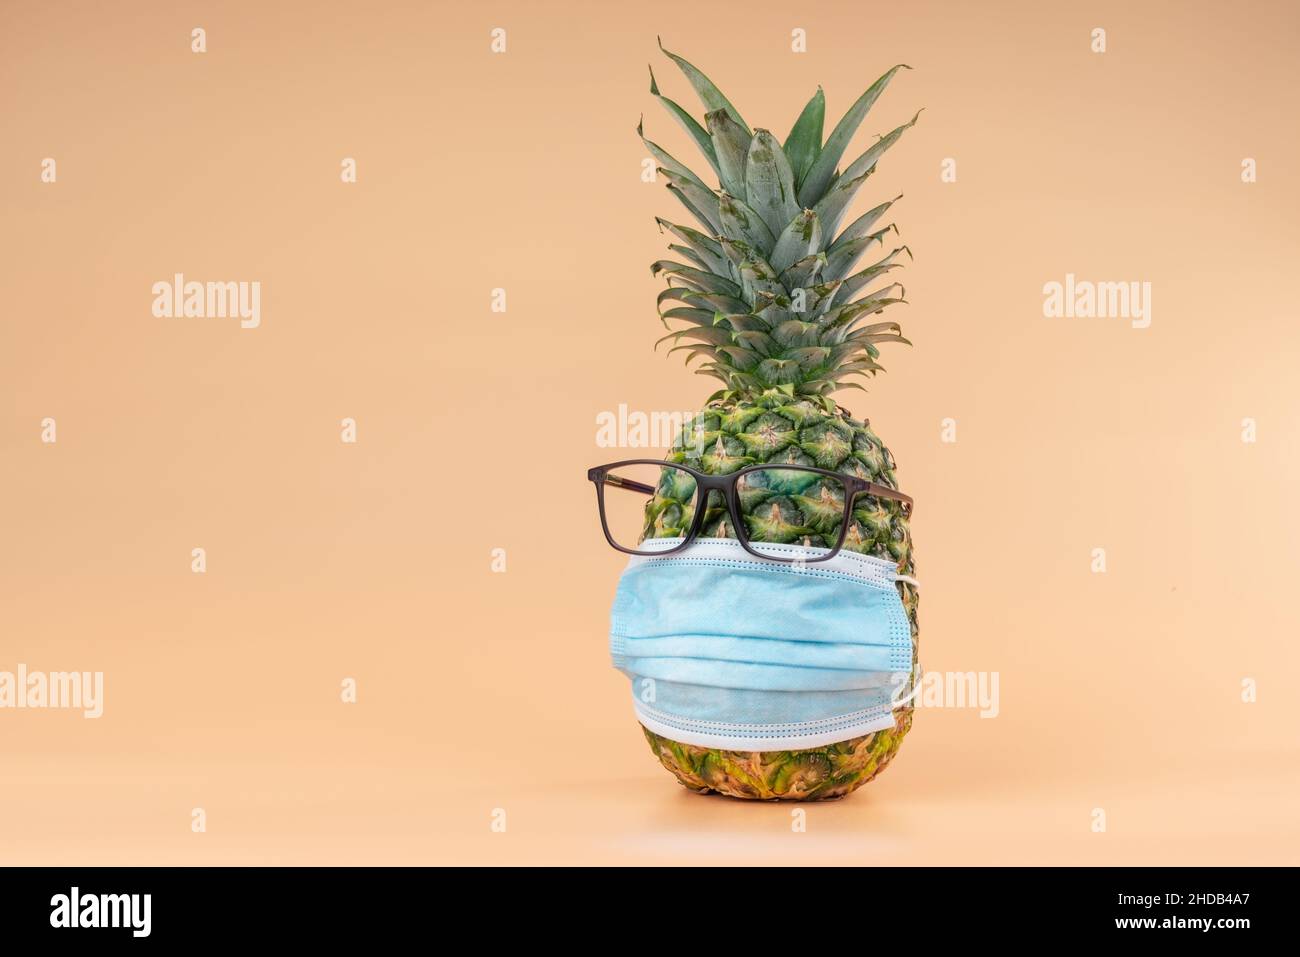 Interpretazione della frutta di ananas in forma umana durante una pandemia con occhiali e una maschera di protezione medico. Spazio di copia Foto Stock